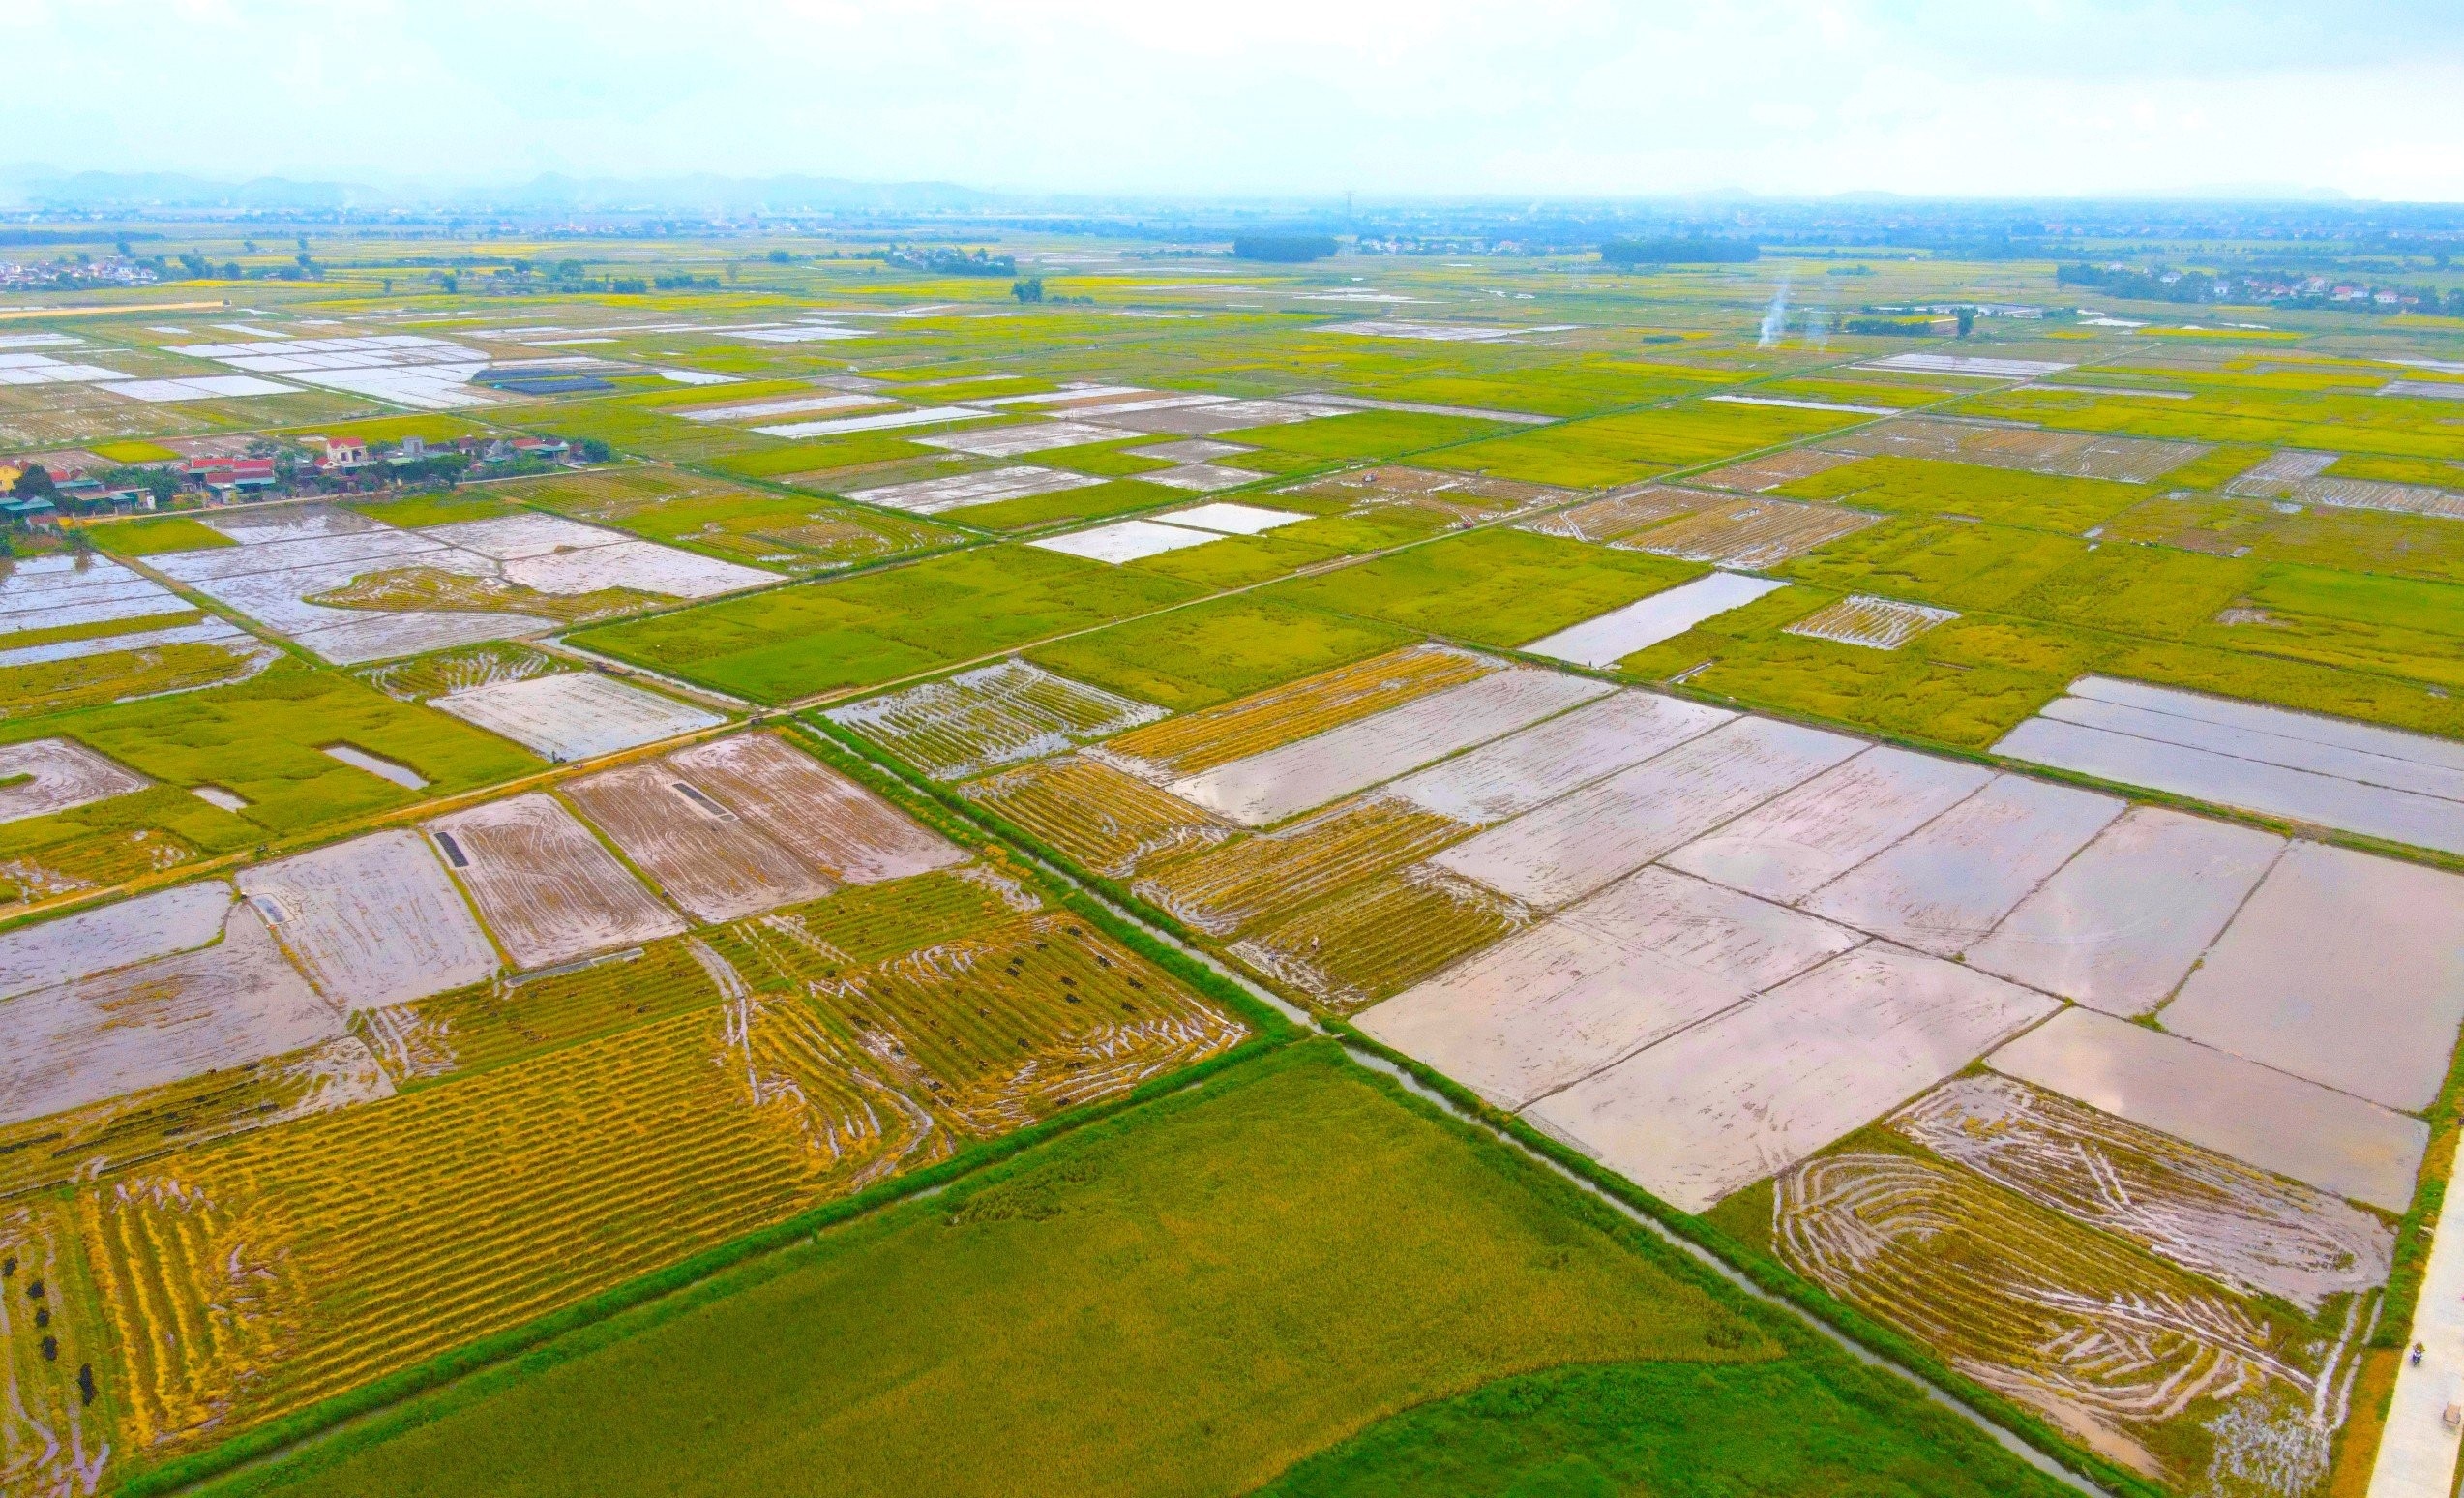 Lúa đông xuân chín vàng rực trên các cánh đồng ở Nghệ An, người dân phấn khởi vì năm nay lúa được mùa- Ảnh 11.